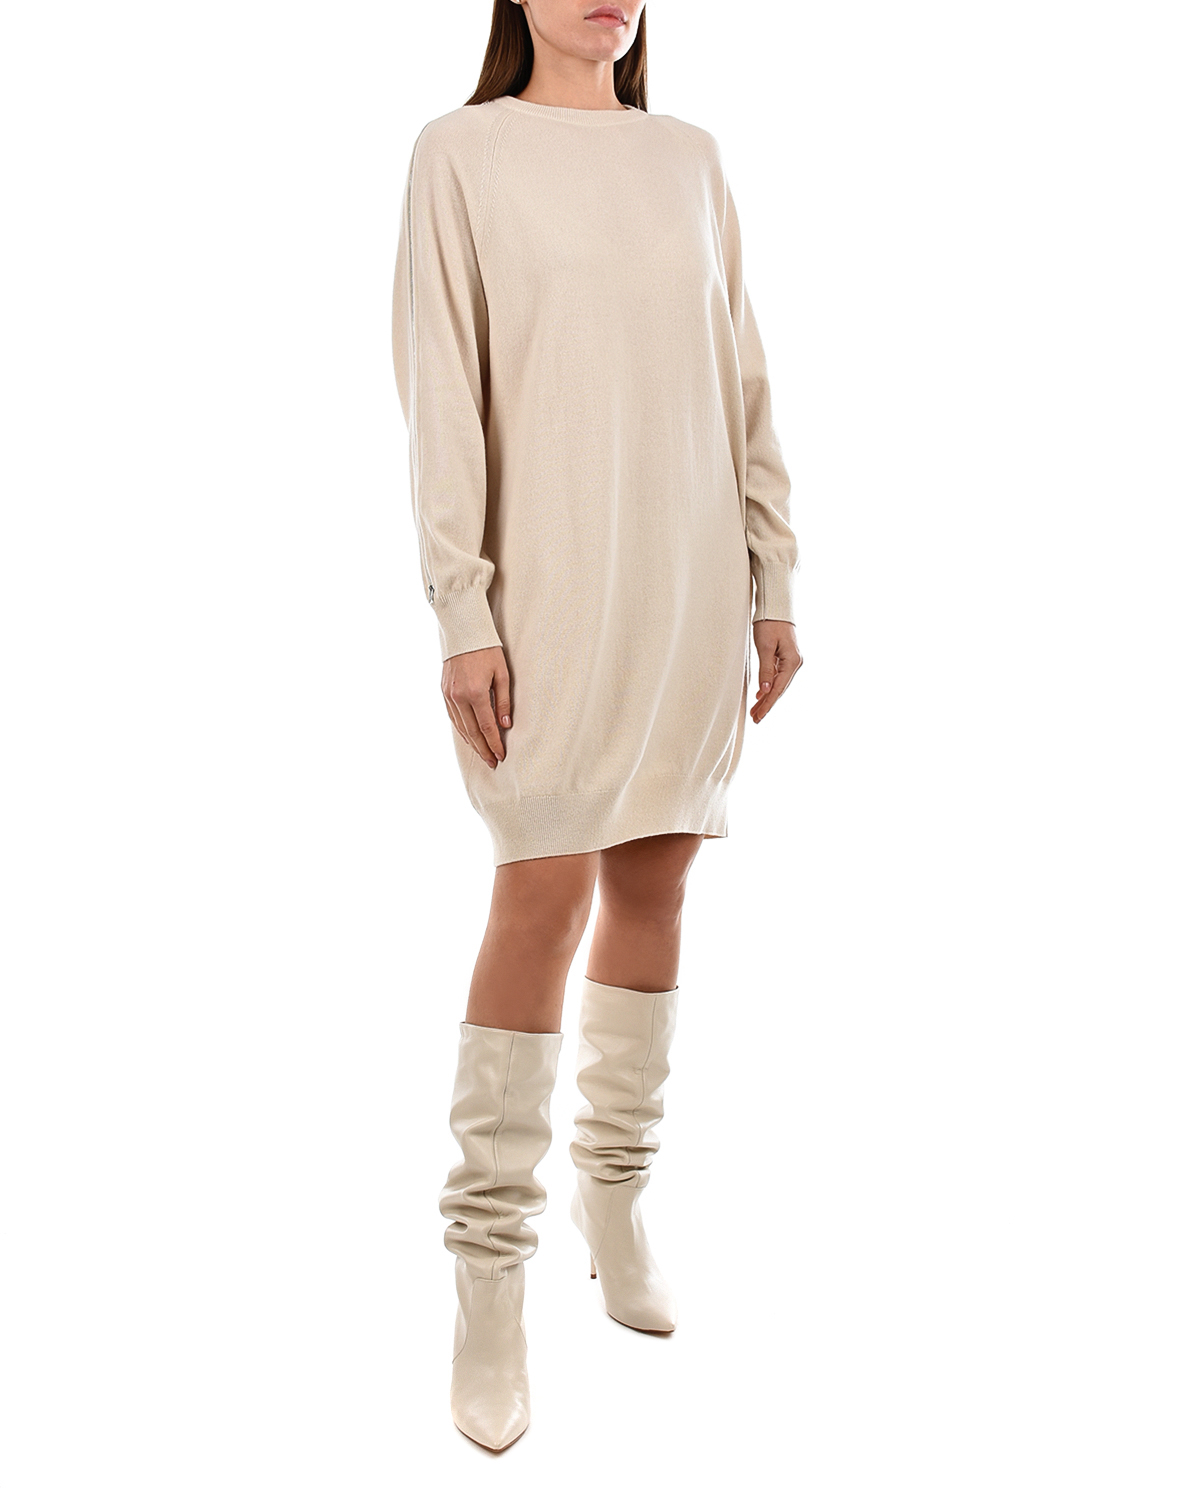 Бежевое платье из шерсти и кашемира MRZ, размер 40, цвет бежевый - фото 3